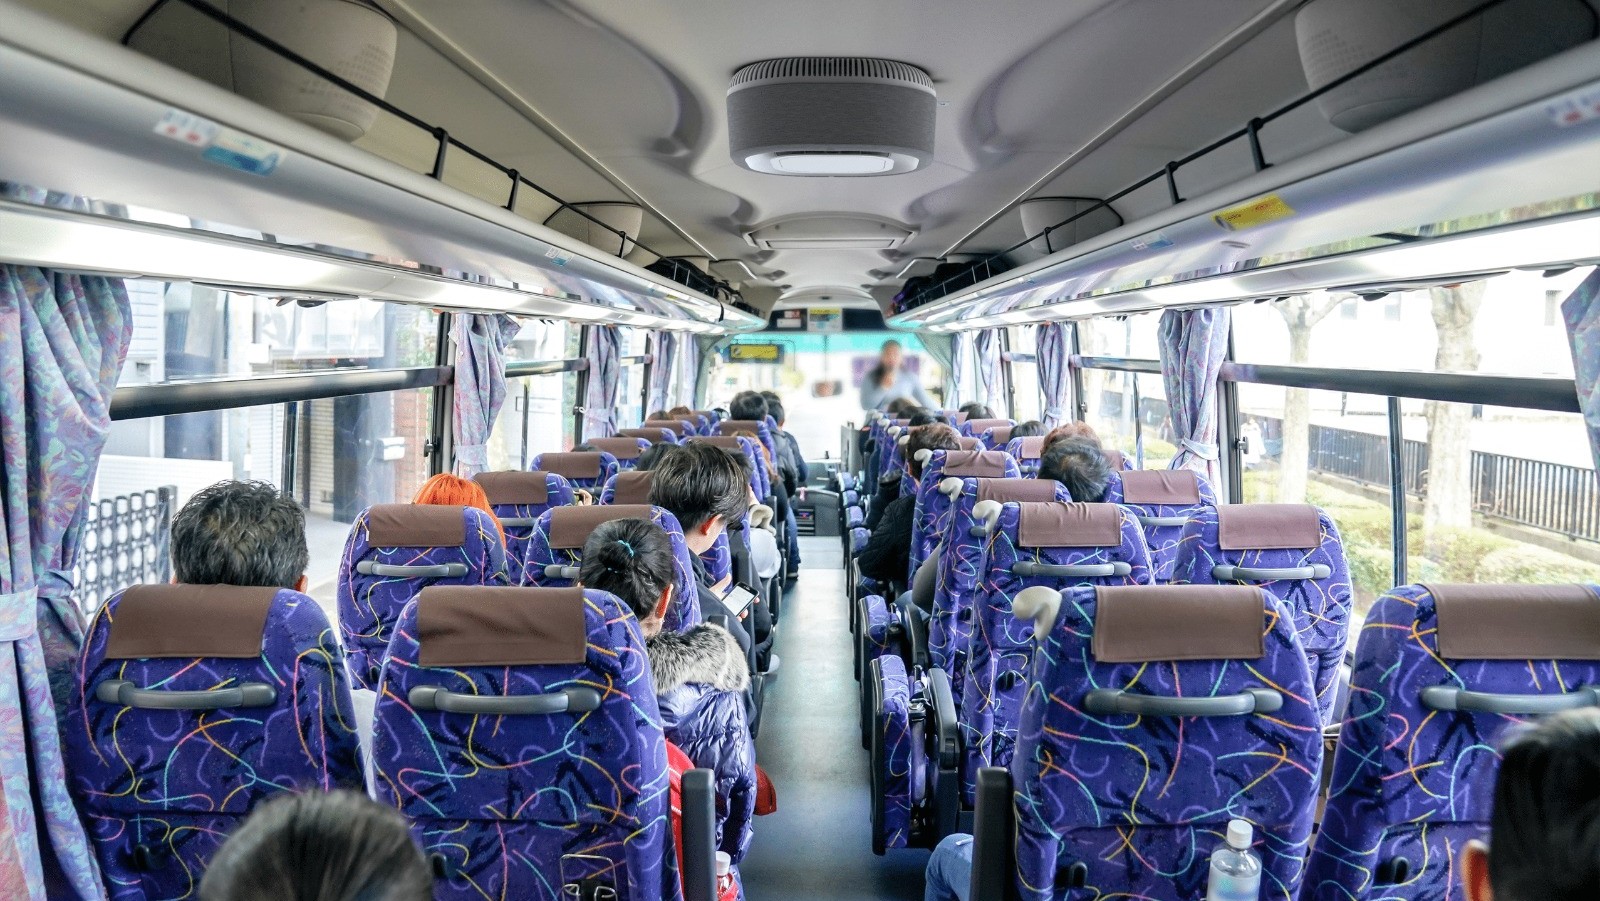 A bus equipped with an Aura Air air purification system. Photo courtesy of Aura Air